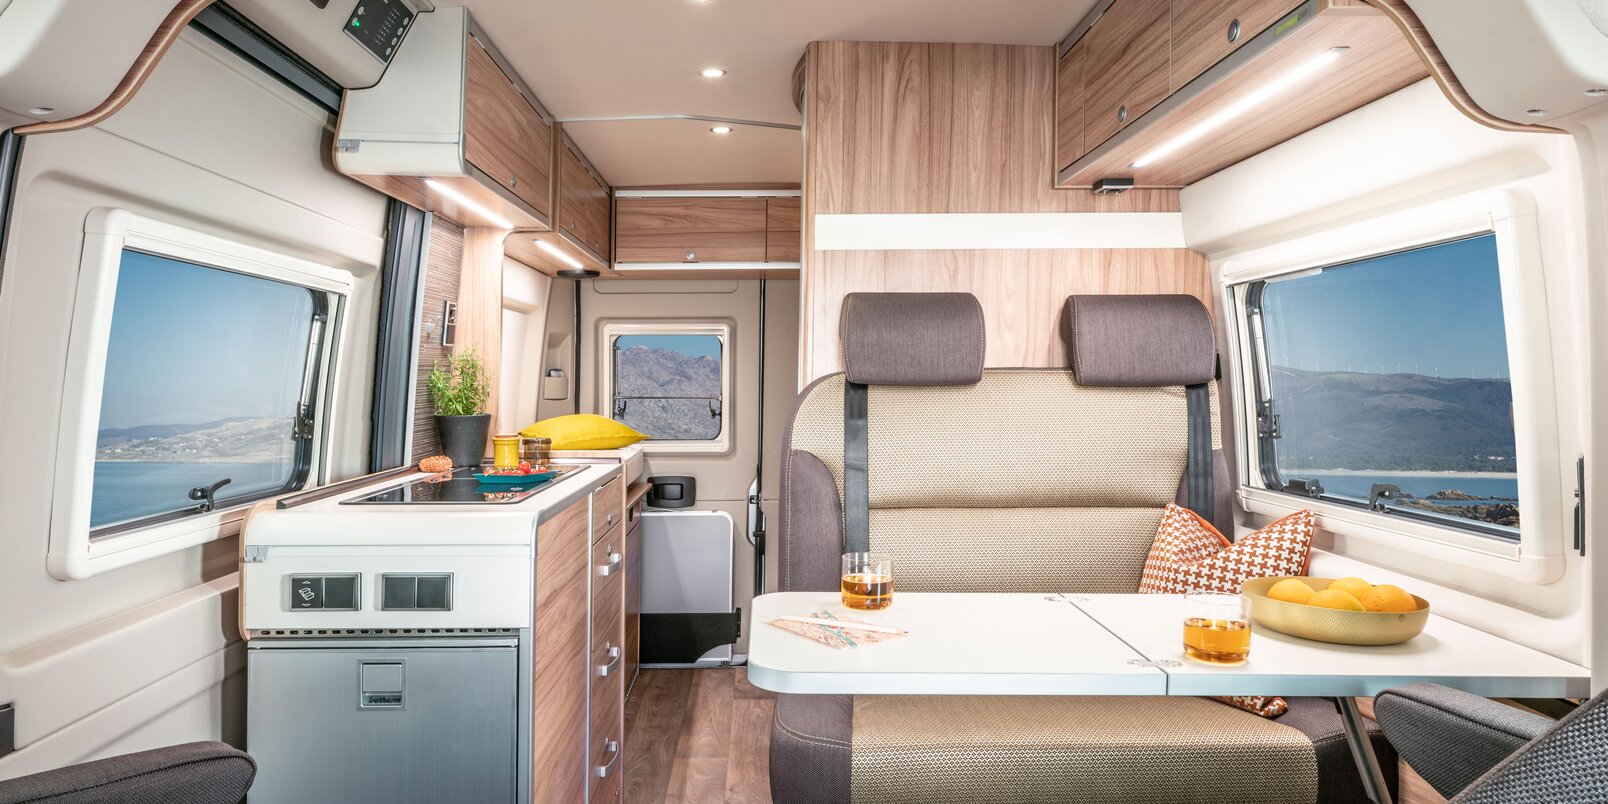 Wohnraum im HYMER Camper Van: Fahrersitze, Tisch, Sitzbank, Küche, Seitenwandfenster, Dachstauschränke, Hecktüre mit Fenster